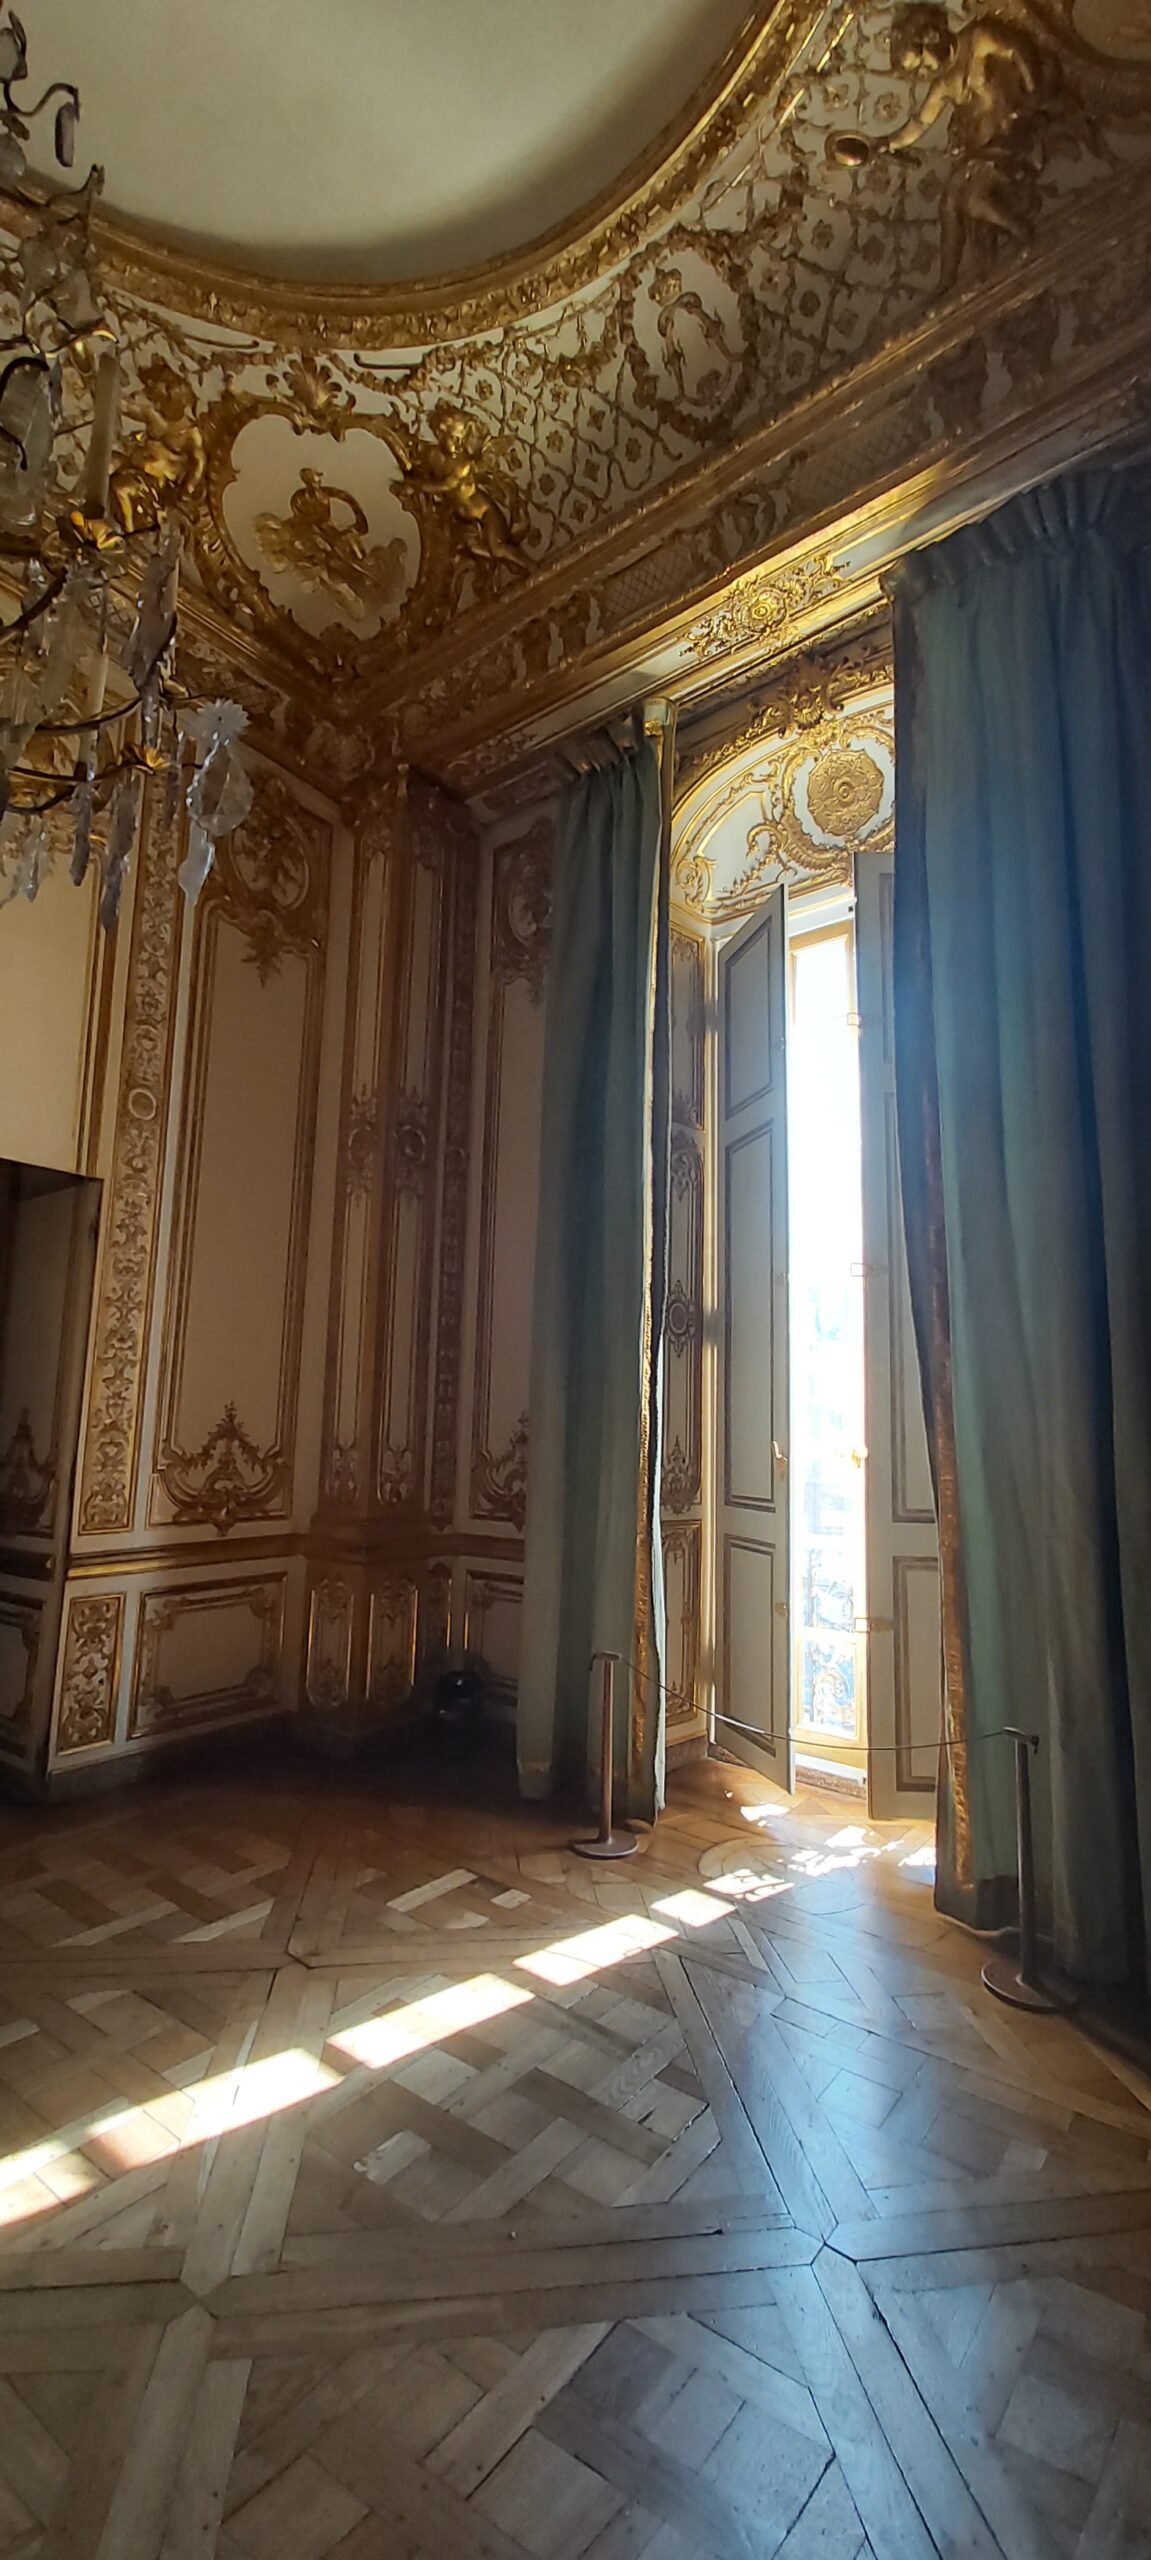 VISIO PRIVILEGE Visite virtuelle des appartements privés de Louis XV et XVI à Versailles – mercredi 20 avril 2022 à 18h30